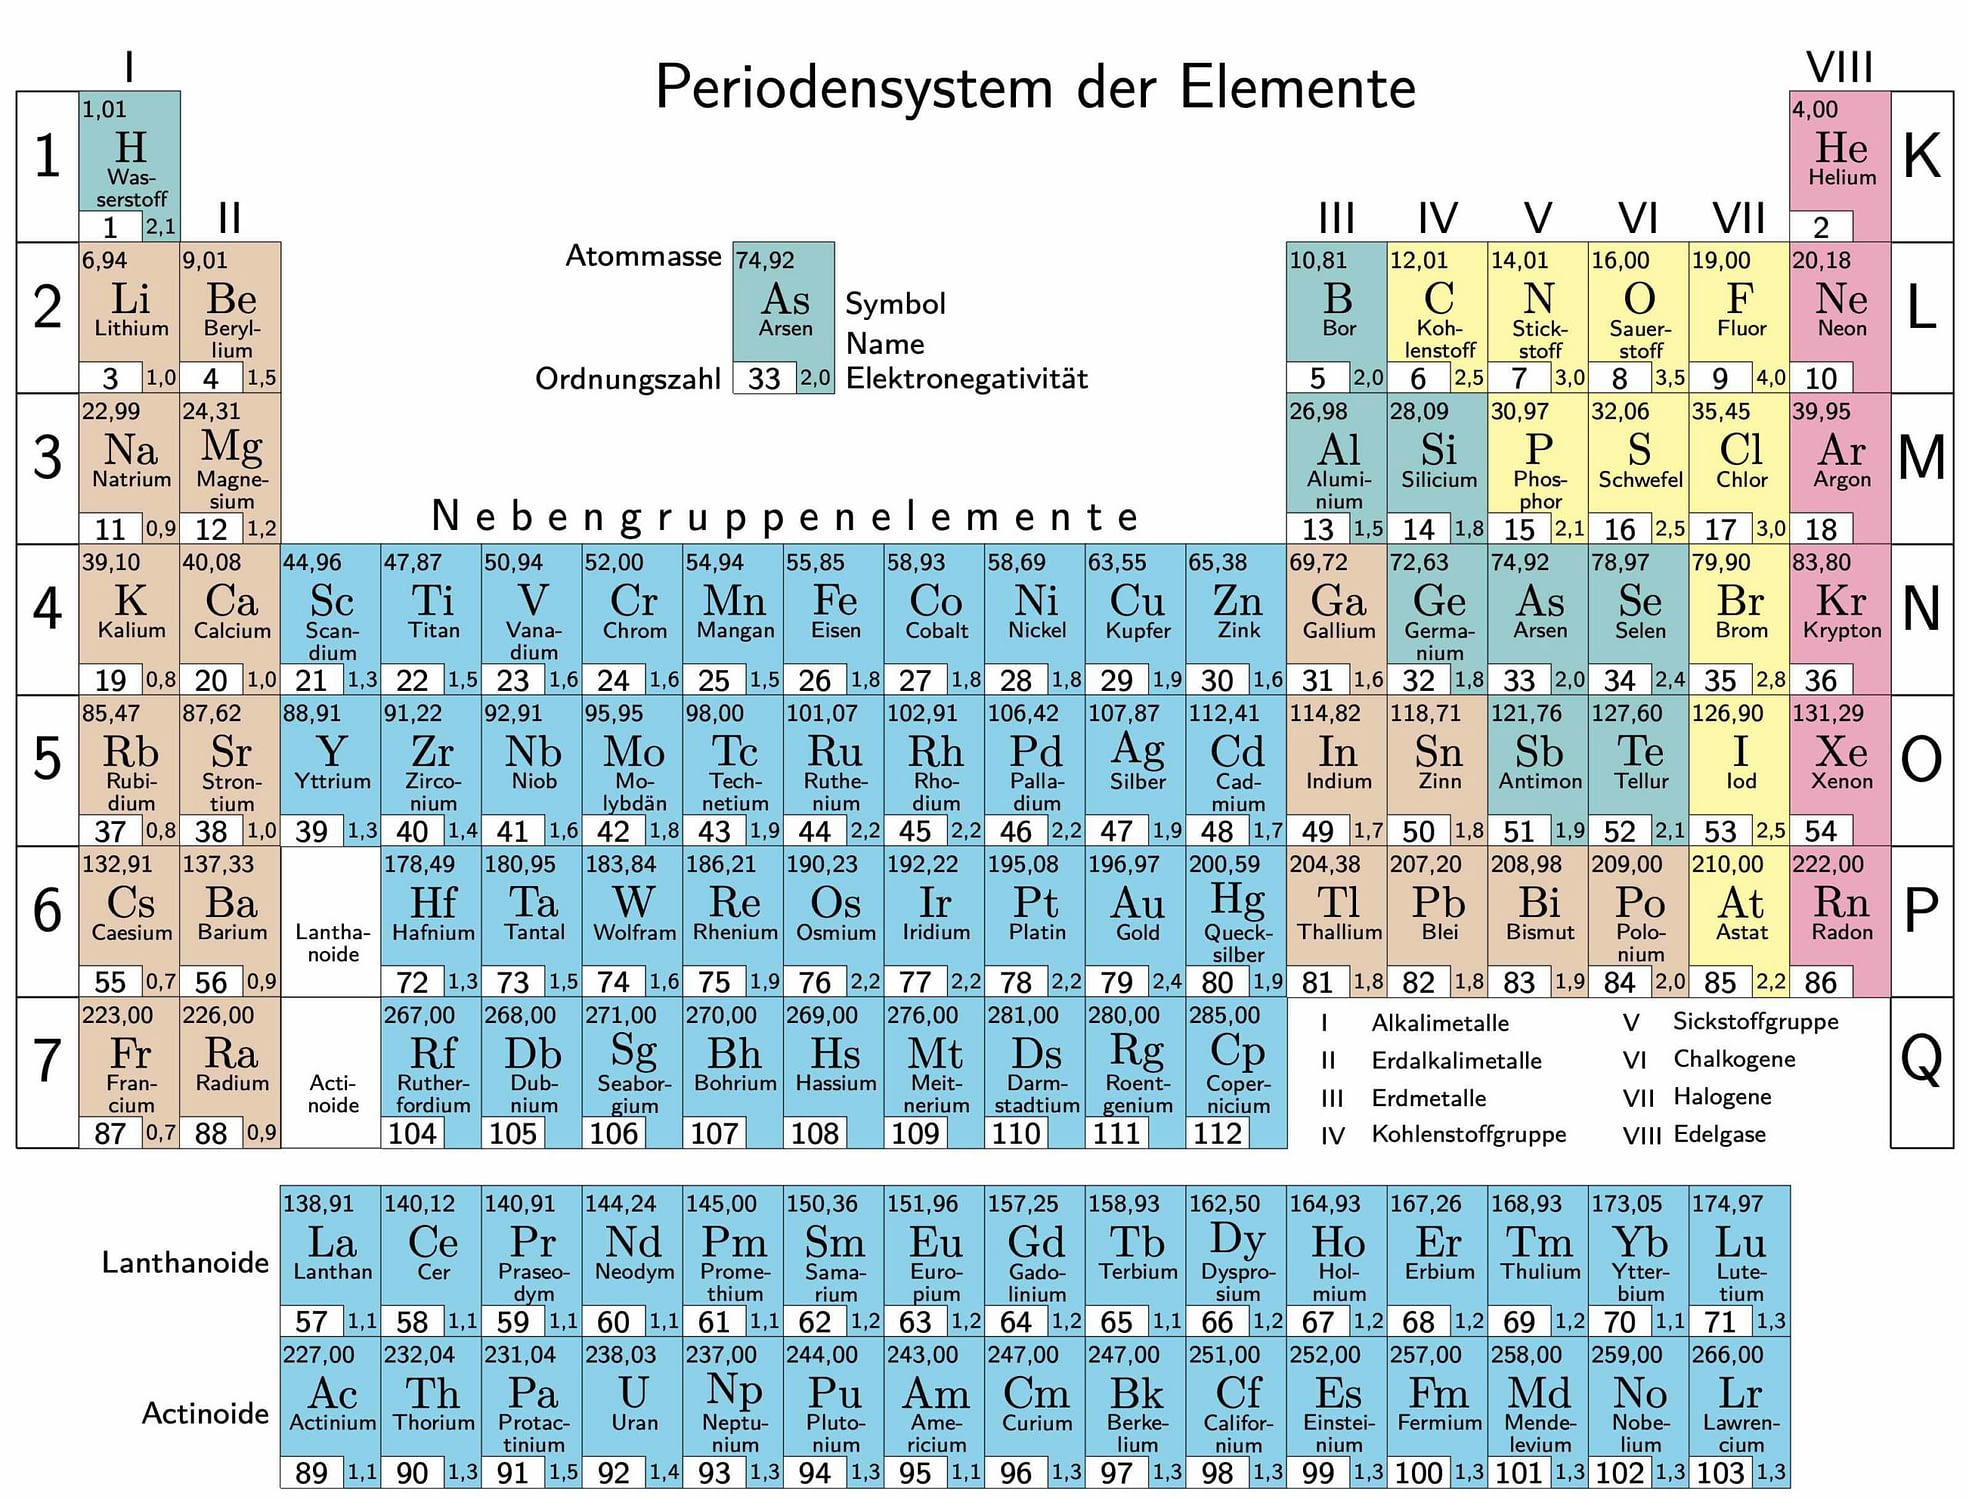 Periodensystem der Elemente.